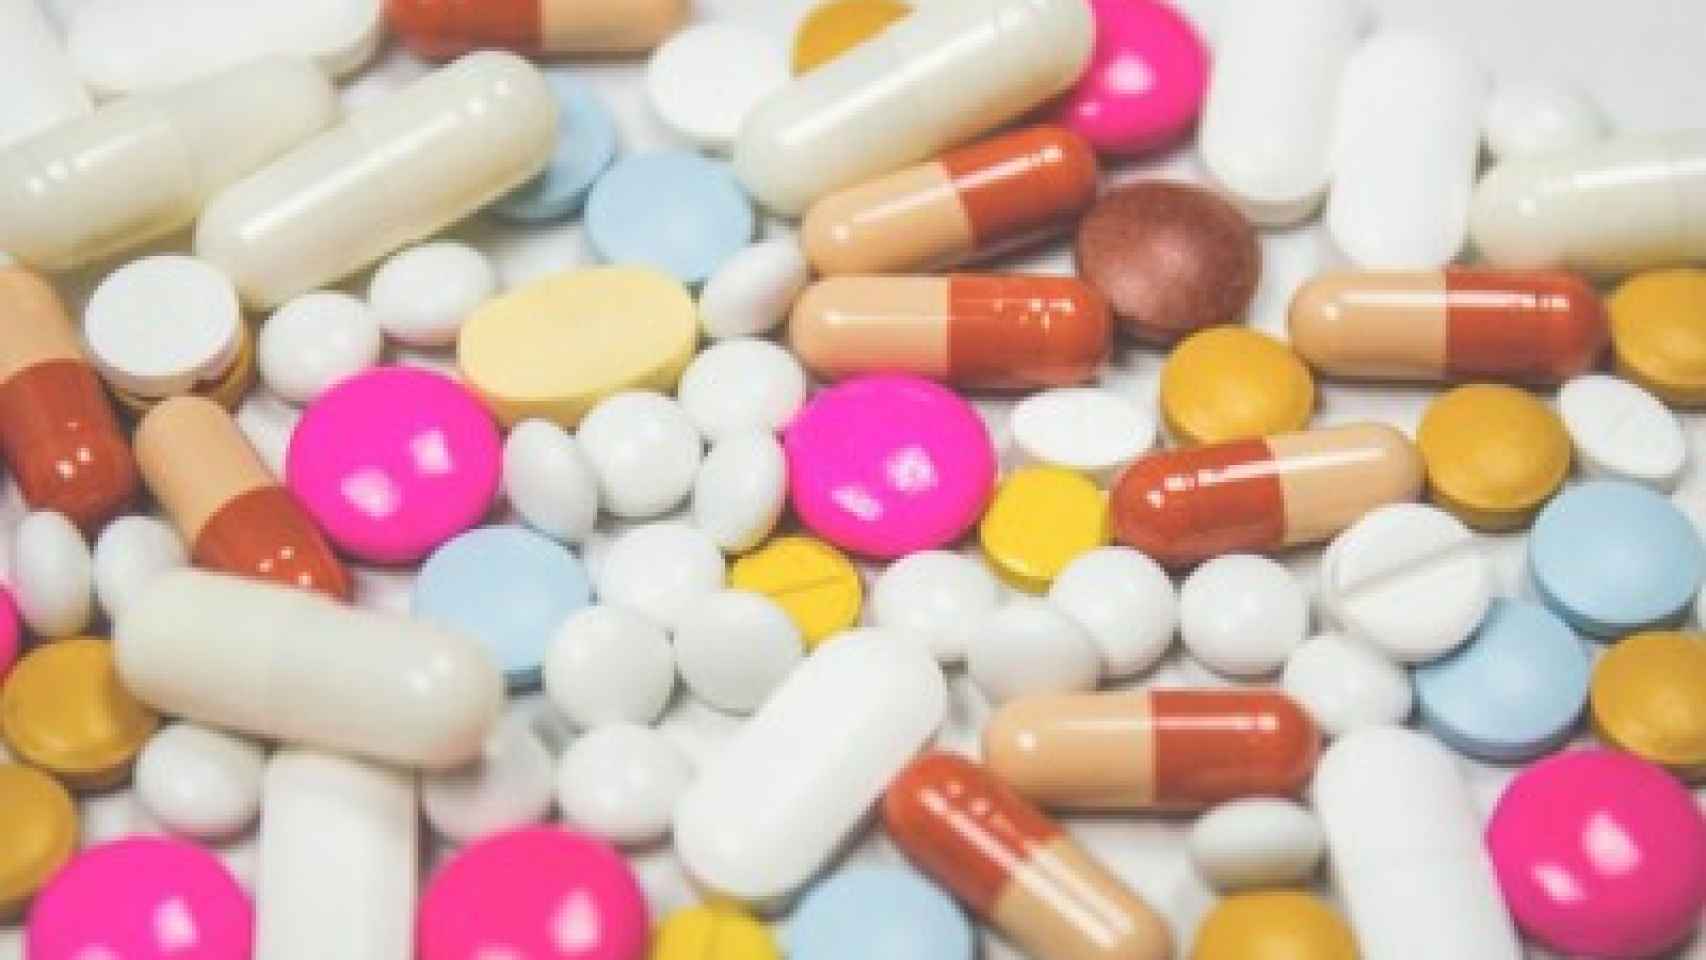 Pastillas antibioticos farmacia medicina 400x267